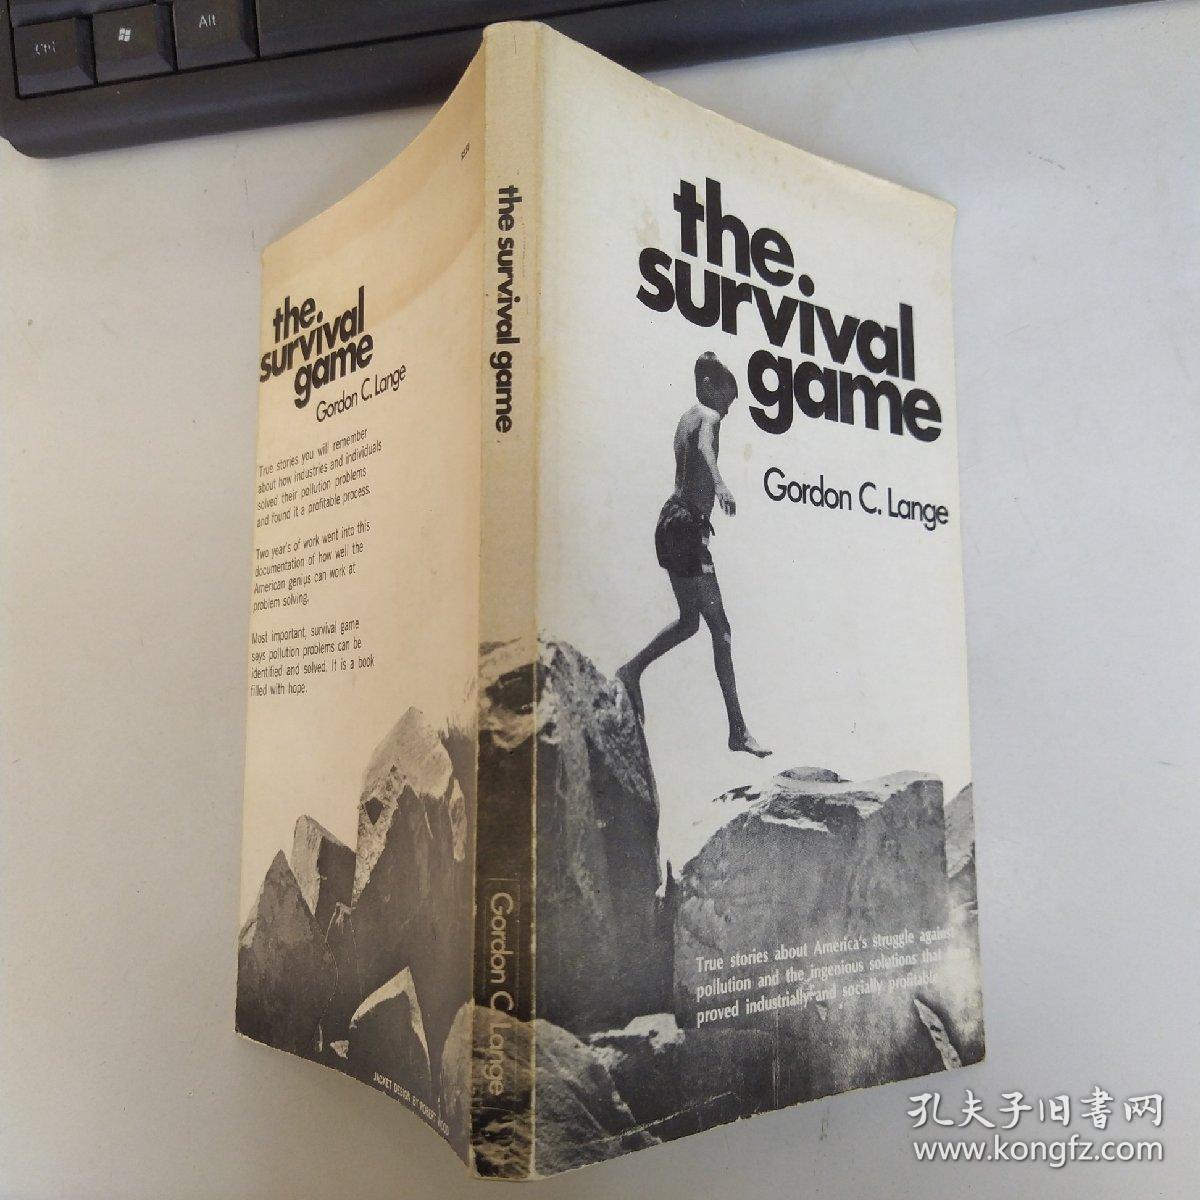 The Survival Game（8品长32开1972年英文原版111页参看书影生存游戏）53705